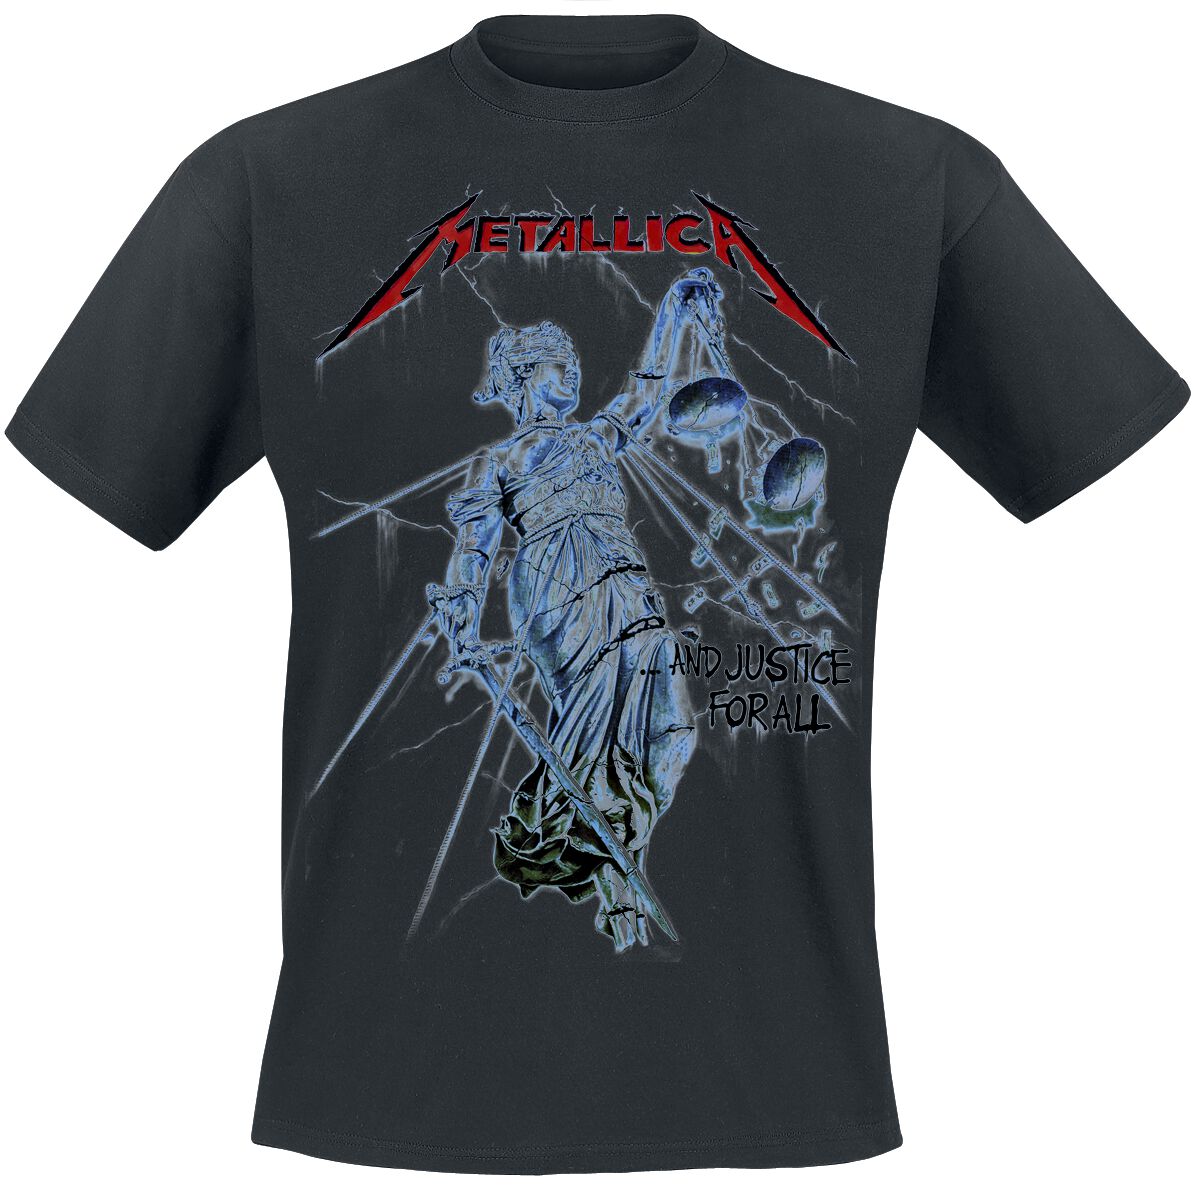 Metallica T-Shirt - And Justice For All - S bis XXL - für Männer - Größe M - schwarz  - Lizenziertes Merchandise!